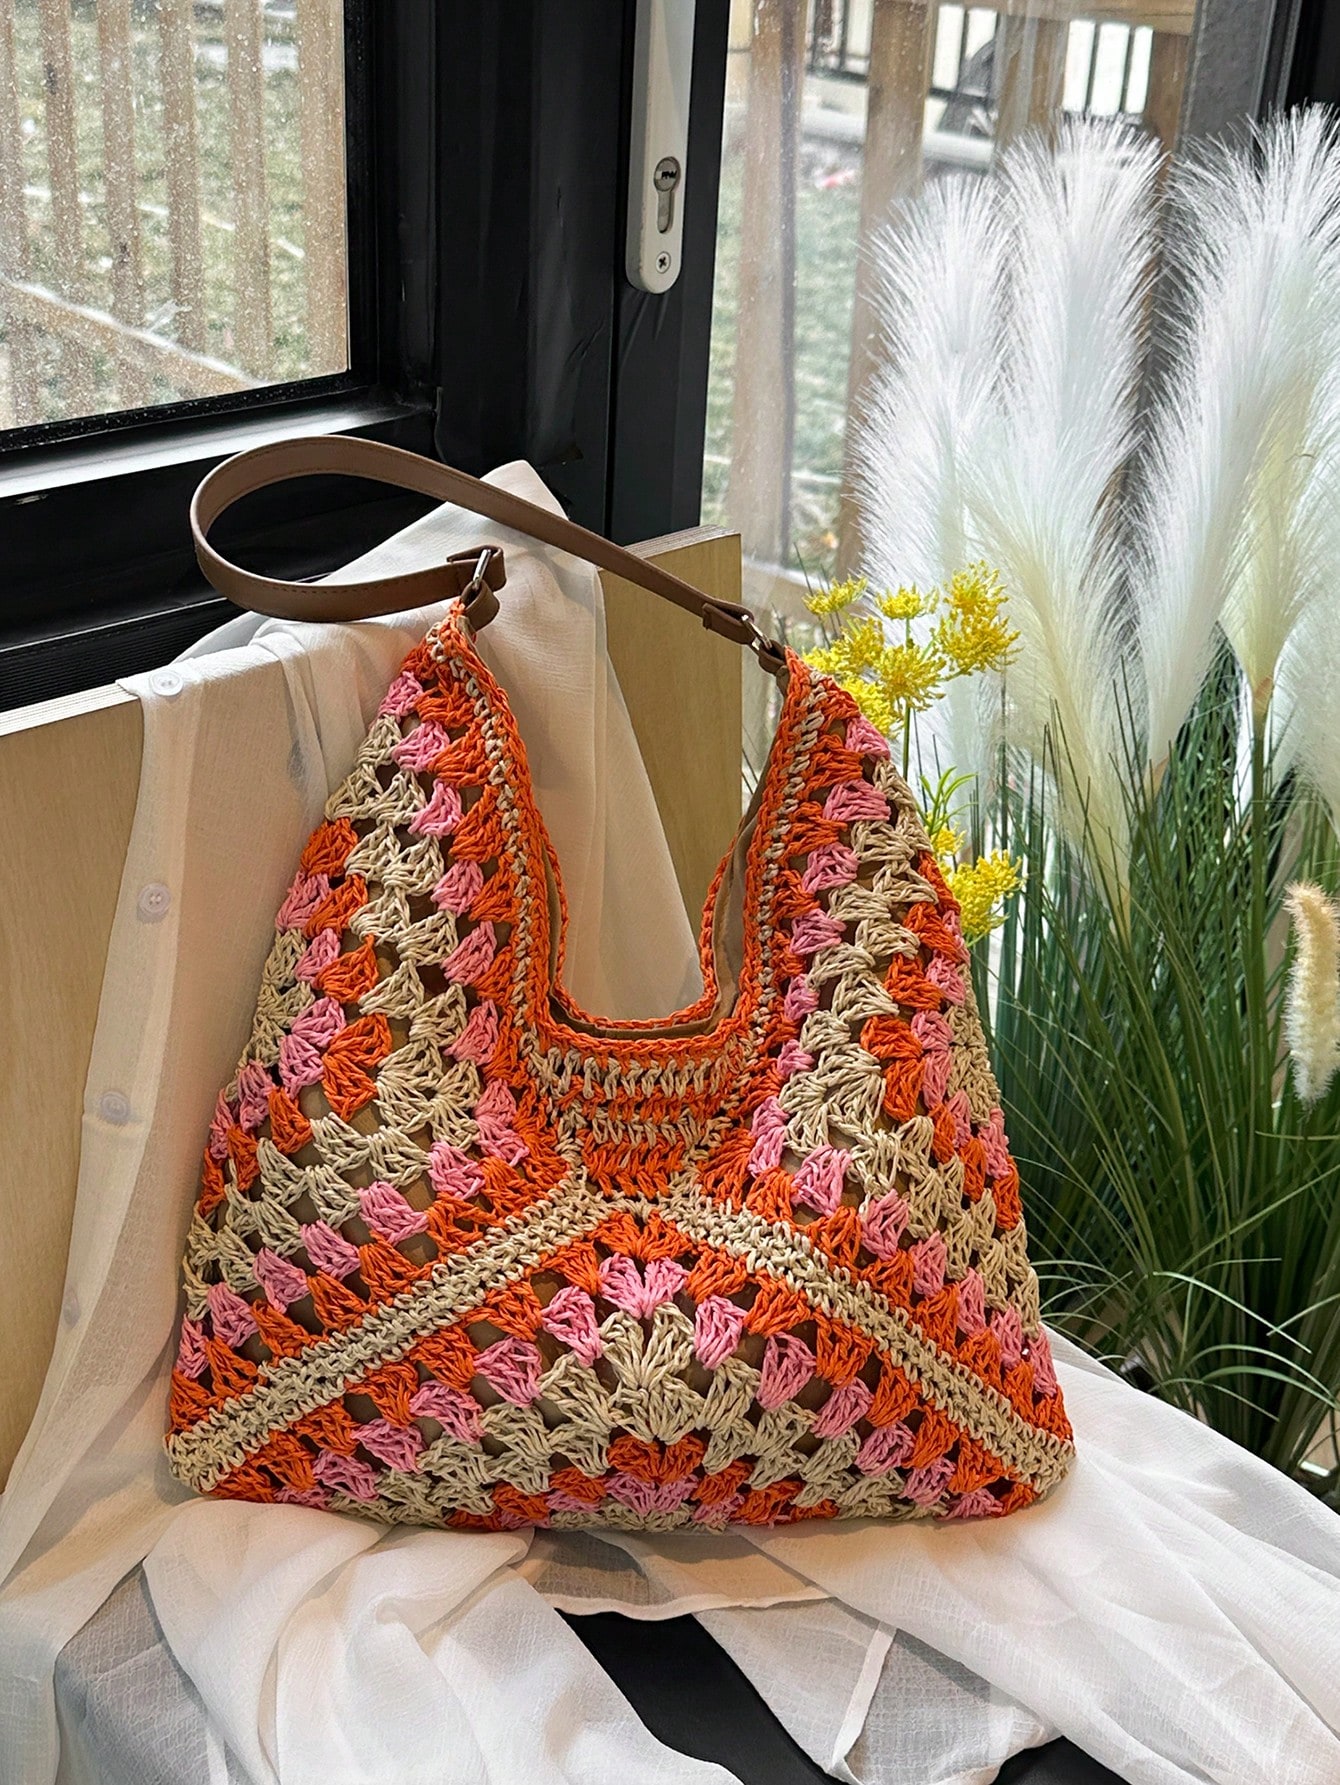 Портативная женская соломенная сумка большой вместимости в стиле бохо, апельсин фото